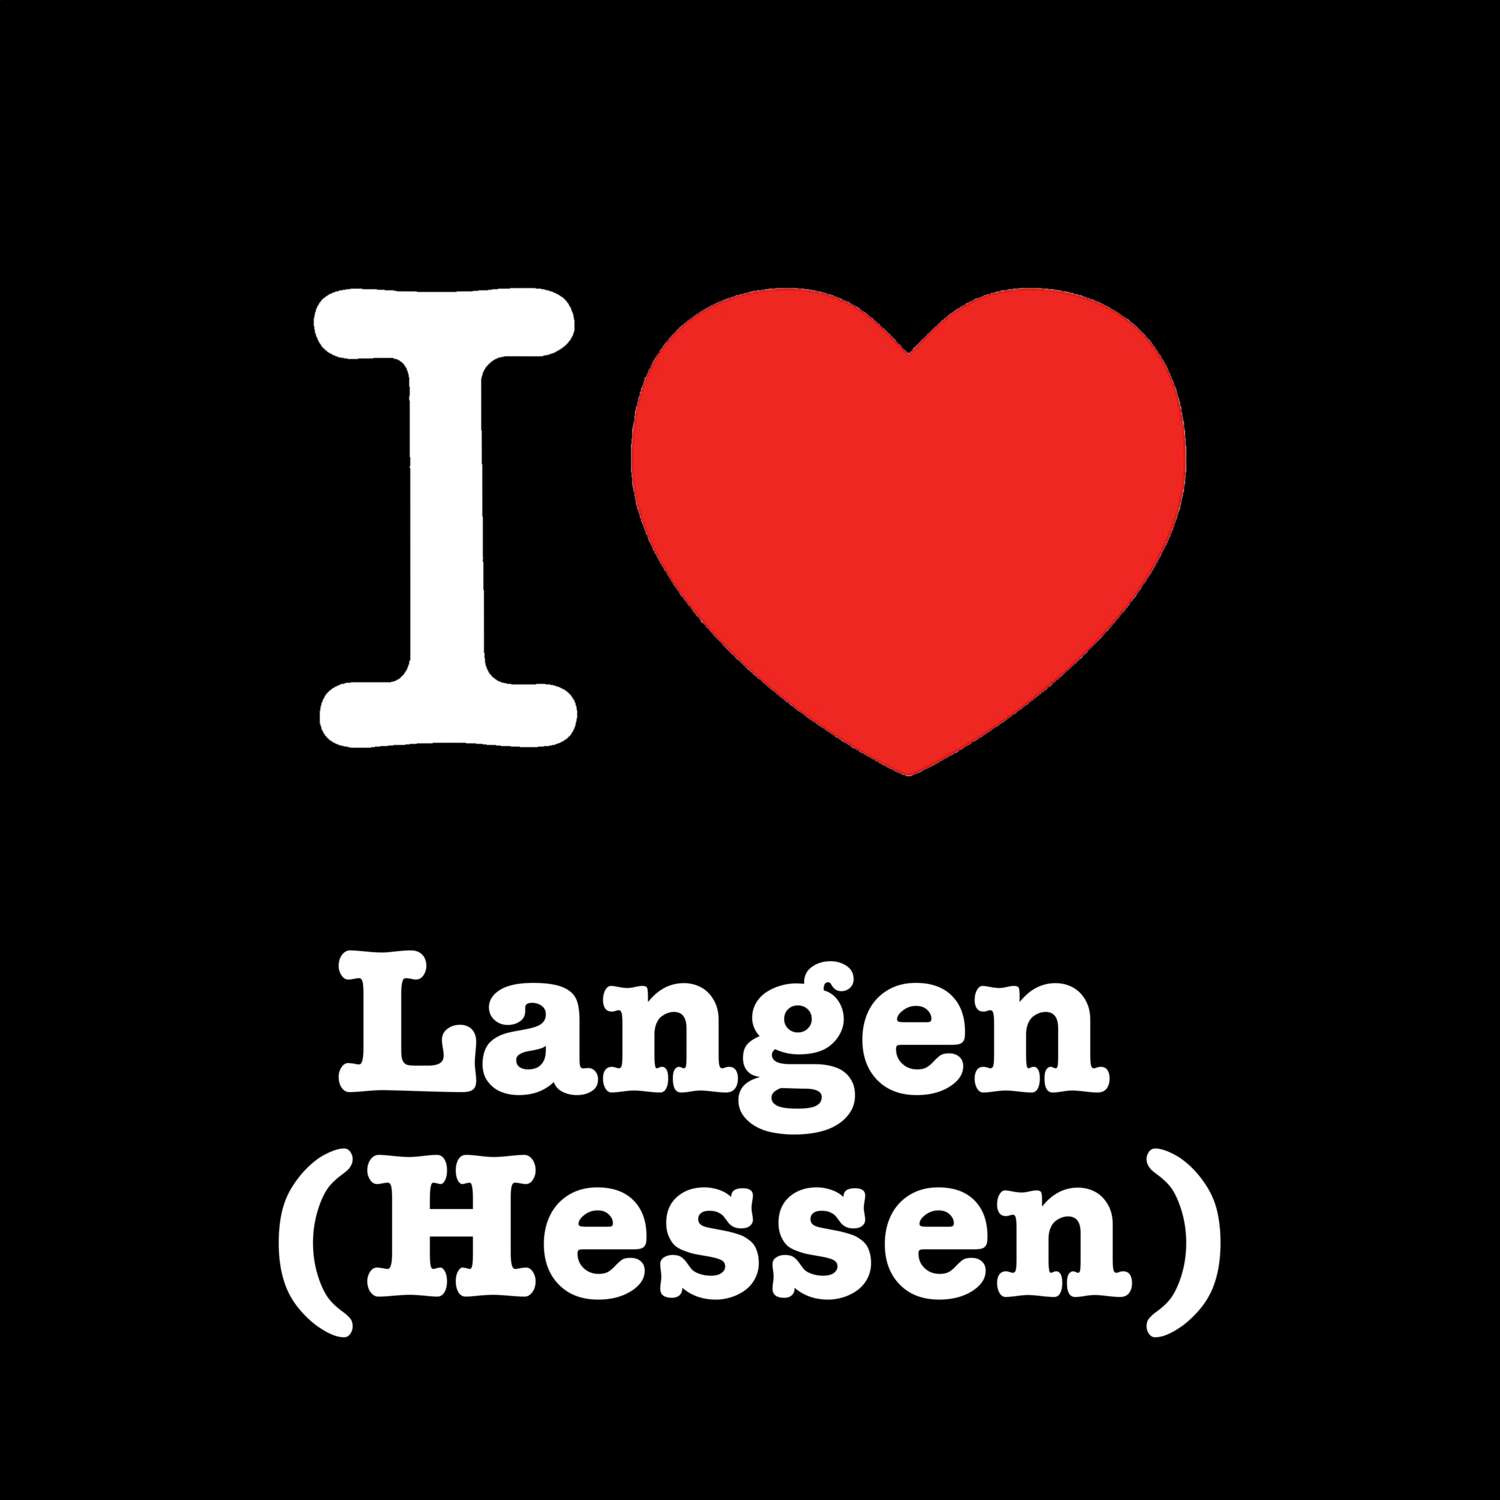 Langen (Hessen) T-Shirt »I love«